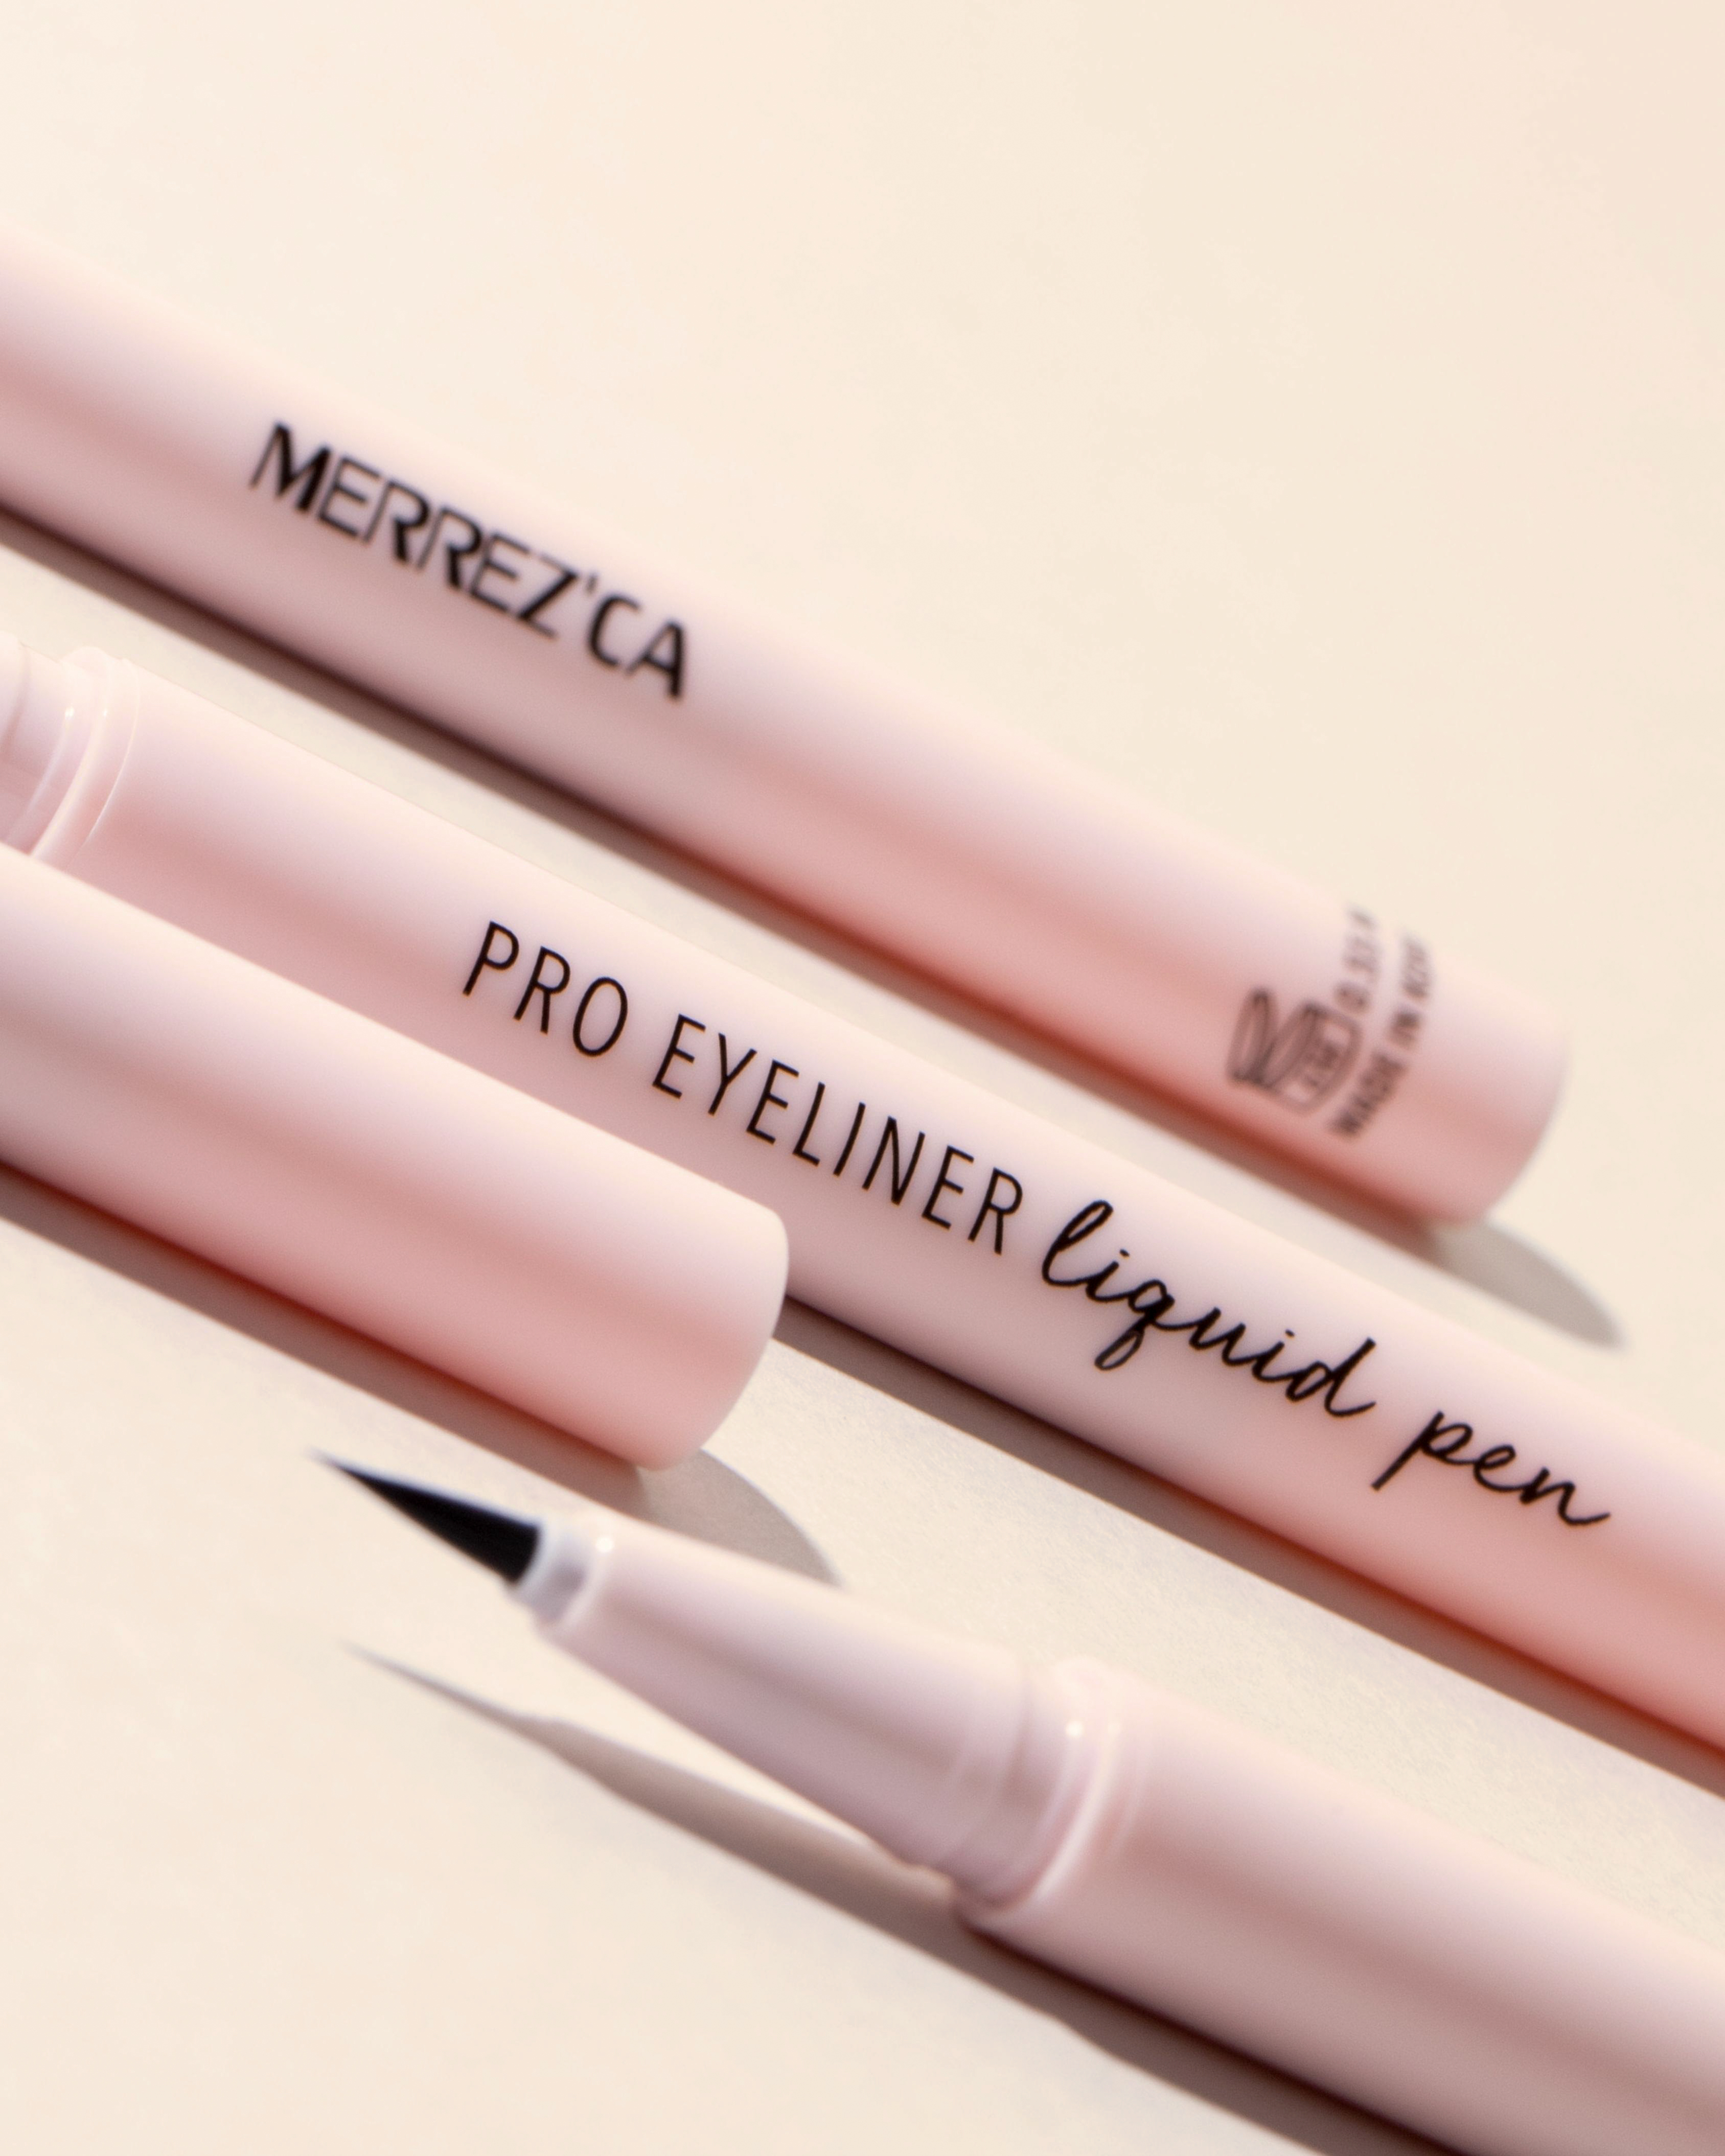 Merrezca Pro Eyeliner Liquid Pen